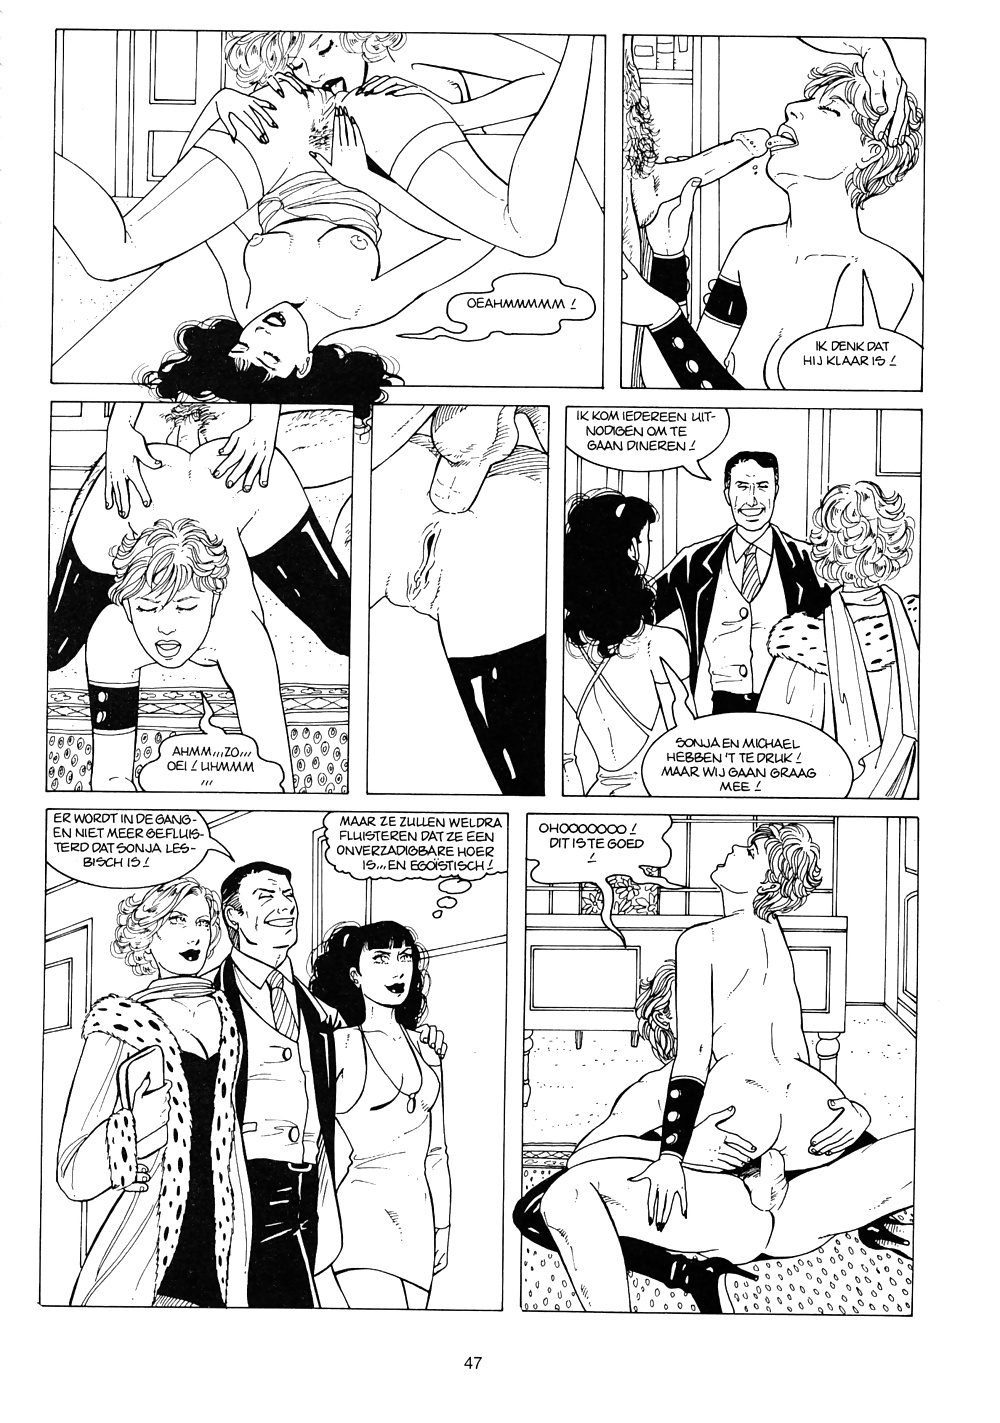 Vintage comic - Bondage Lust #40775603